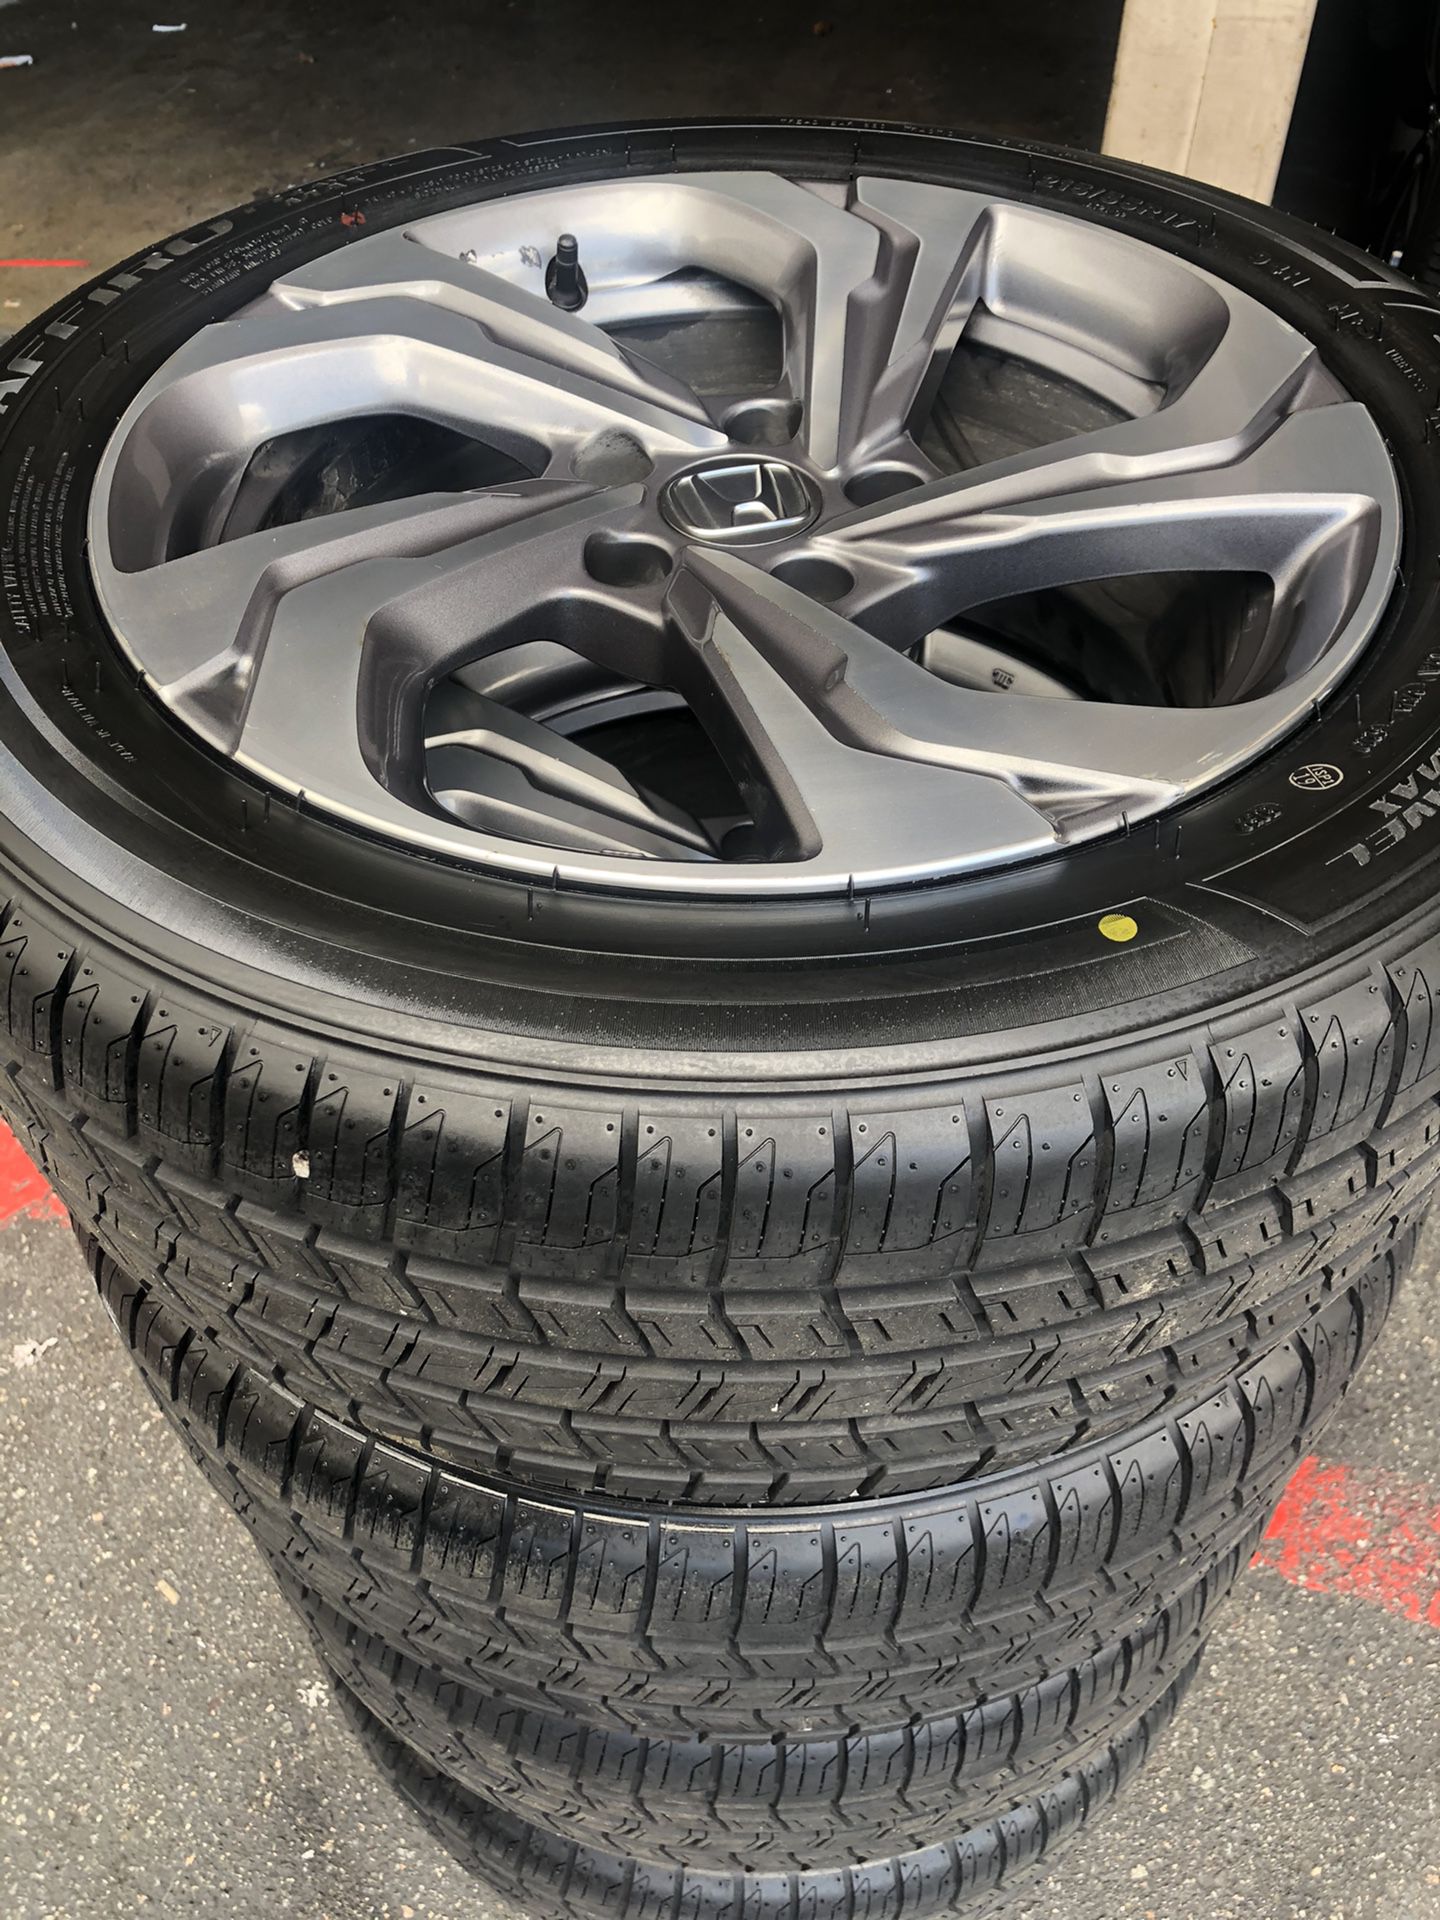 Rims tires 17 5x114.3 fit Honda Accord civic new tires